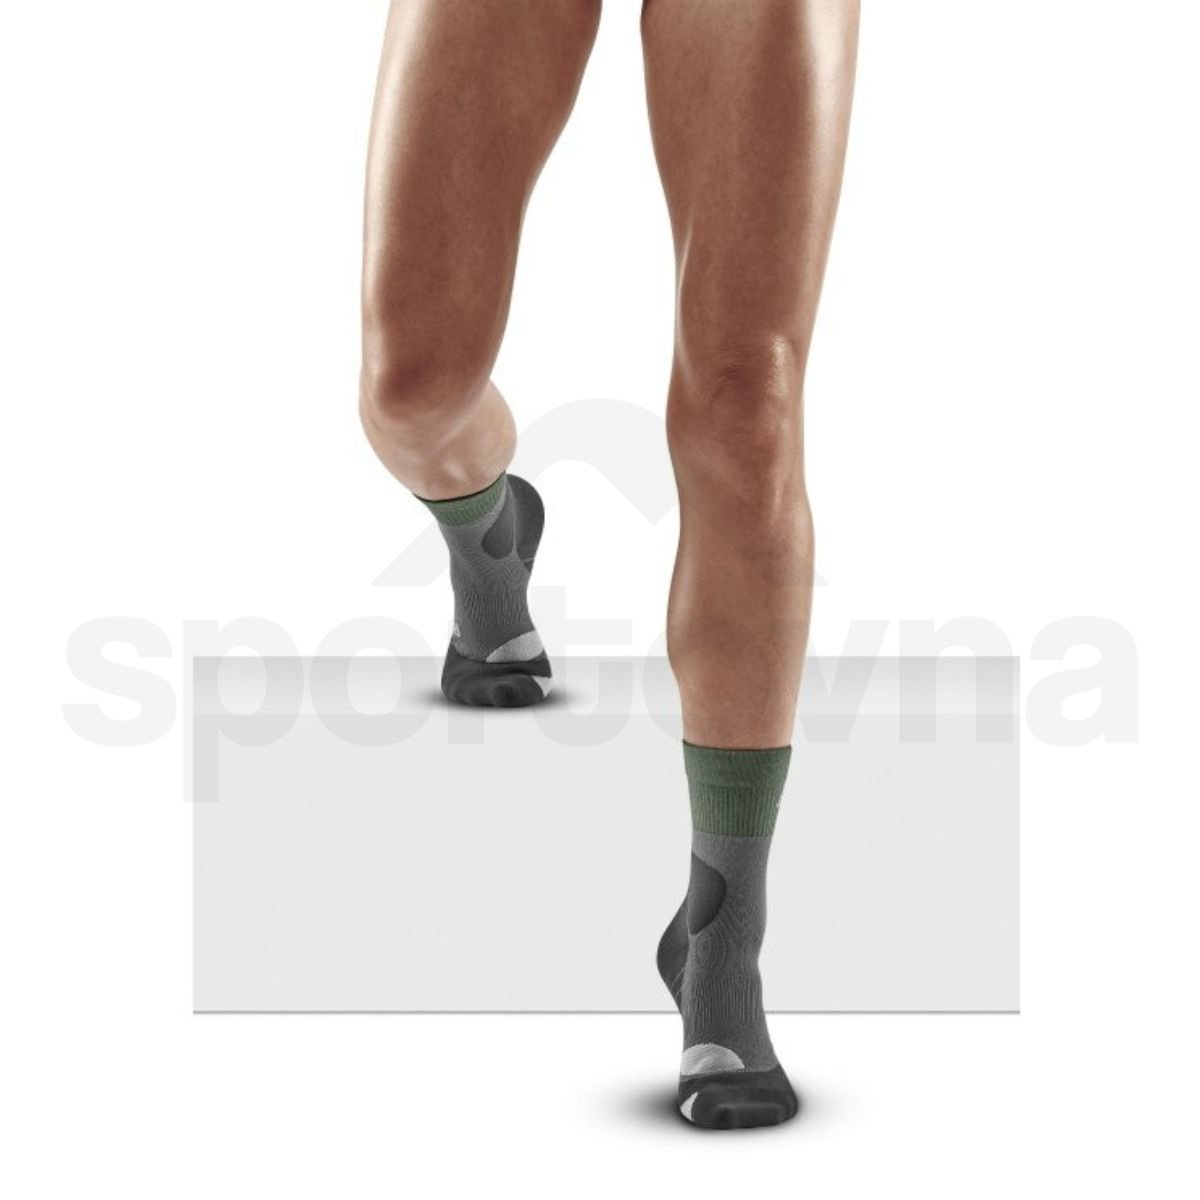 Ponožky CEP Merino W - zelená/šedá